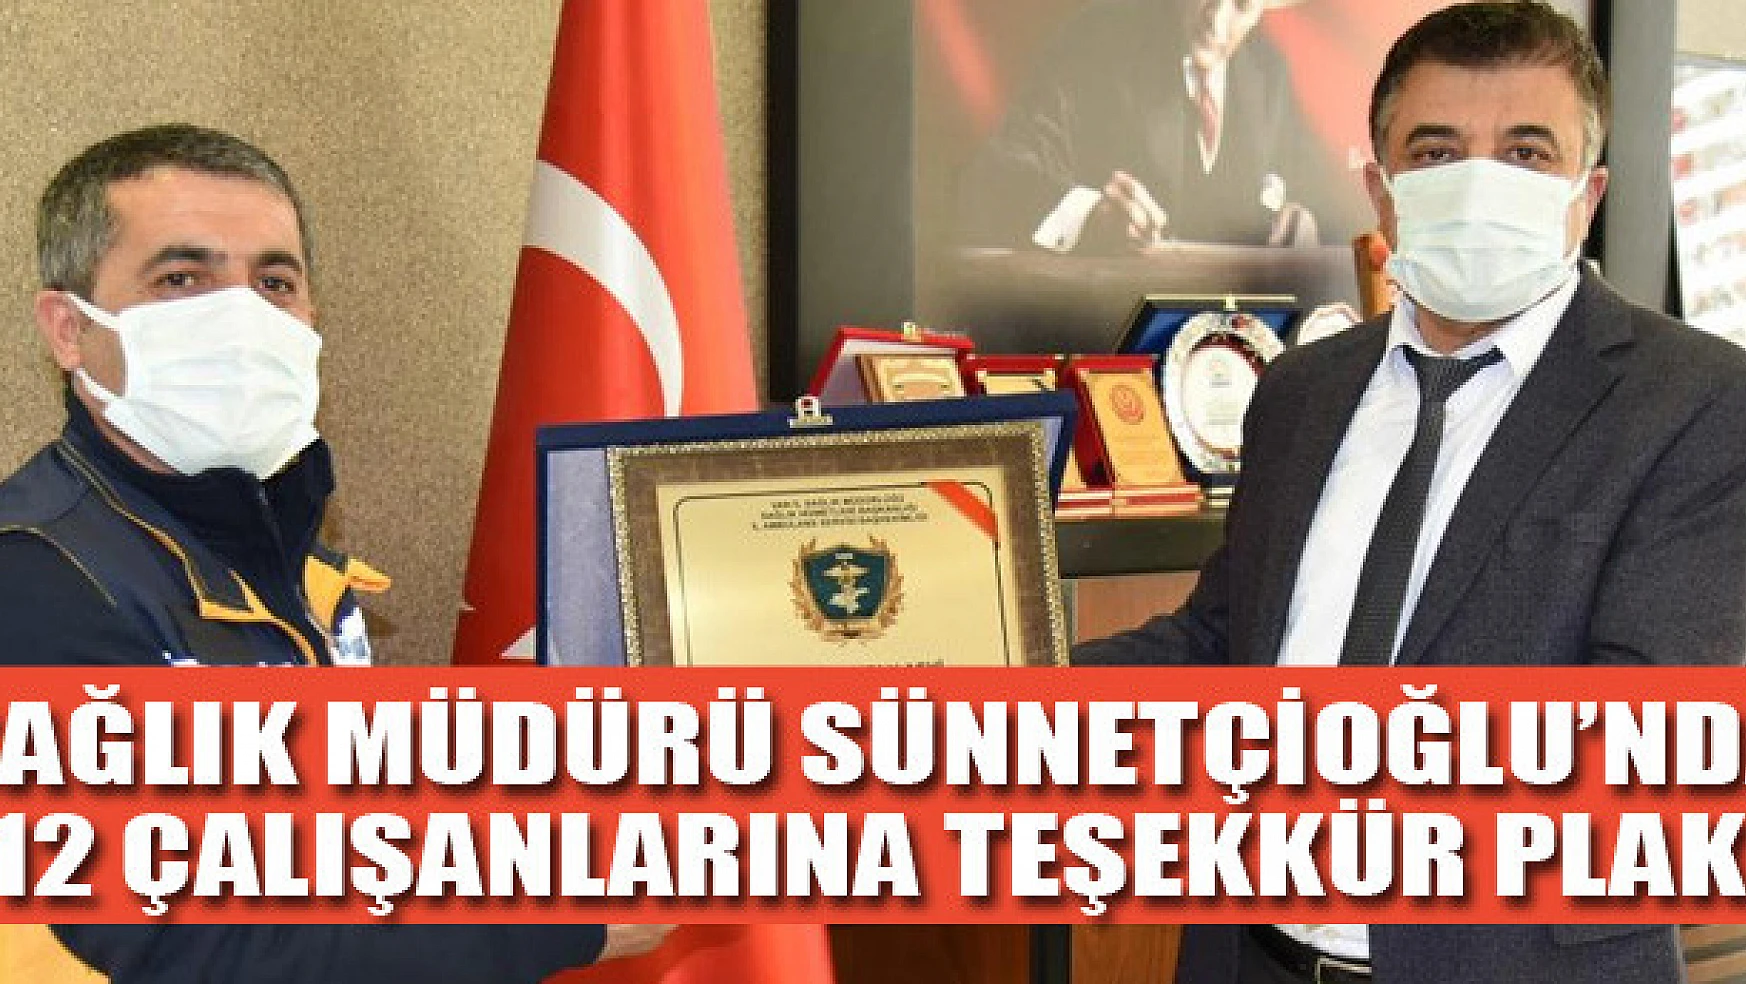 Sağlık Müdürü Sünnetçioğlu'ndan 112 çalışanlarına teşekkür plaketi